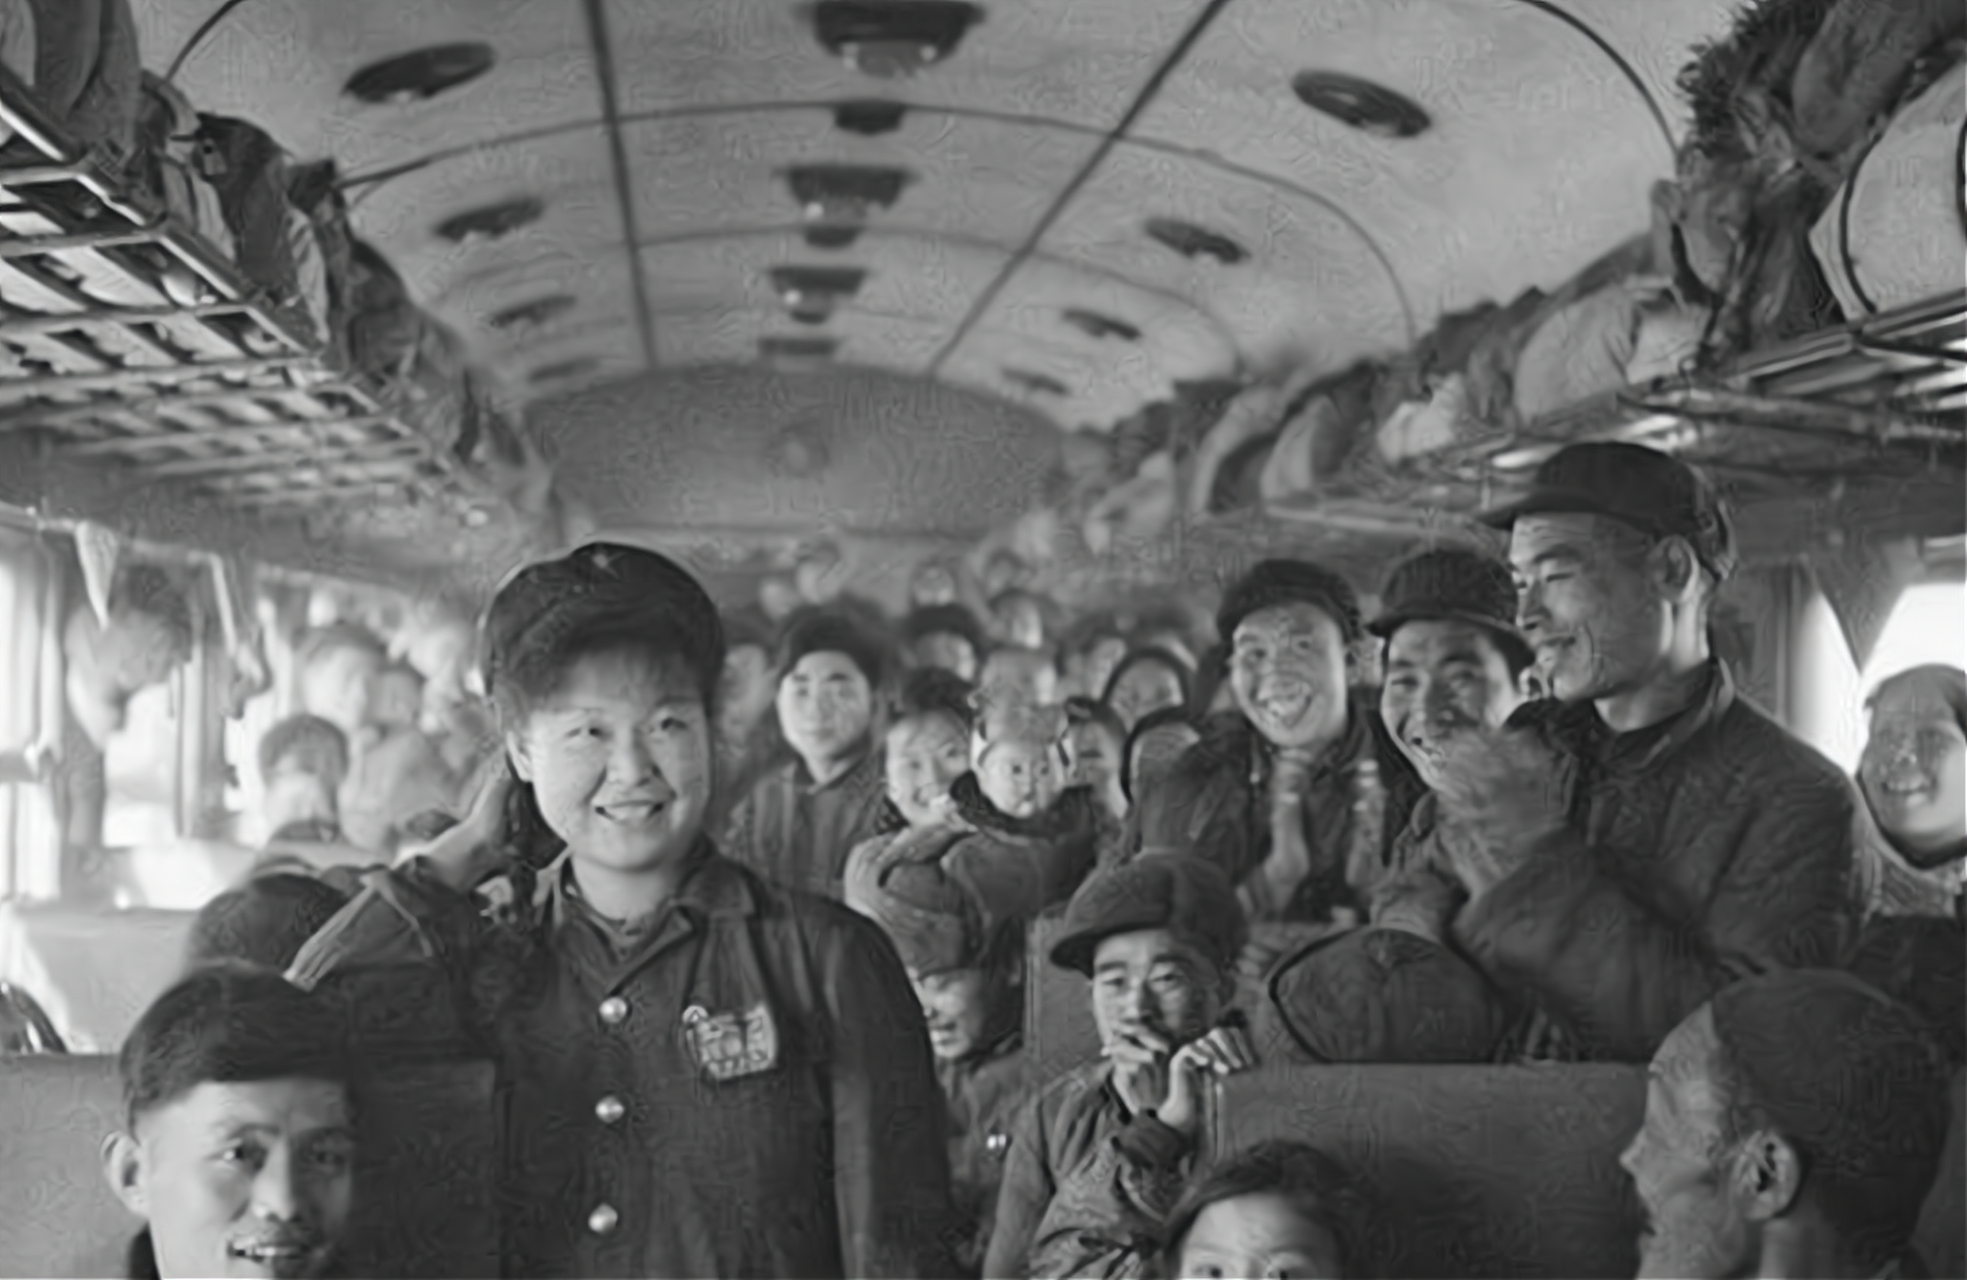 1976年初冬,兰州军区副司令张藩坐火车去郑州出差,未到送餐时间时,张